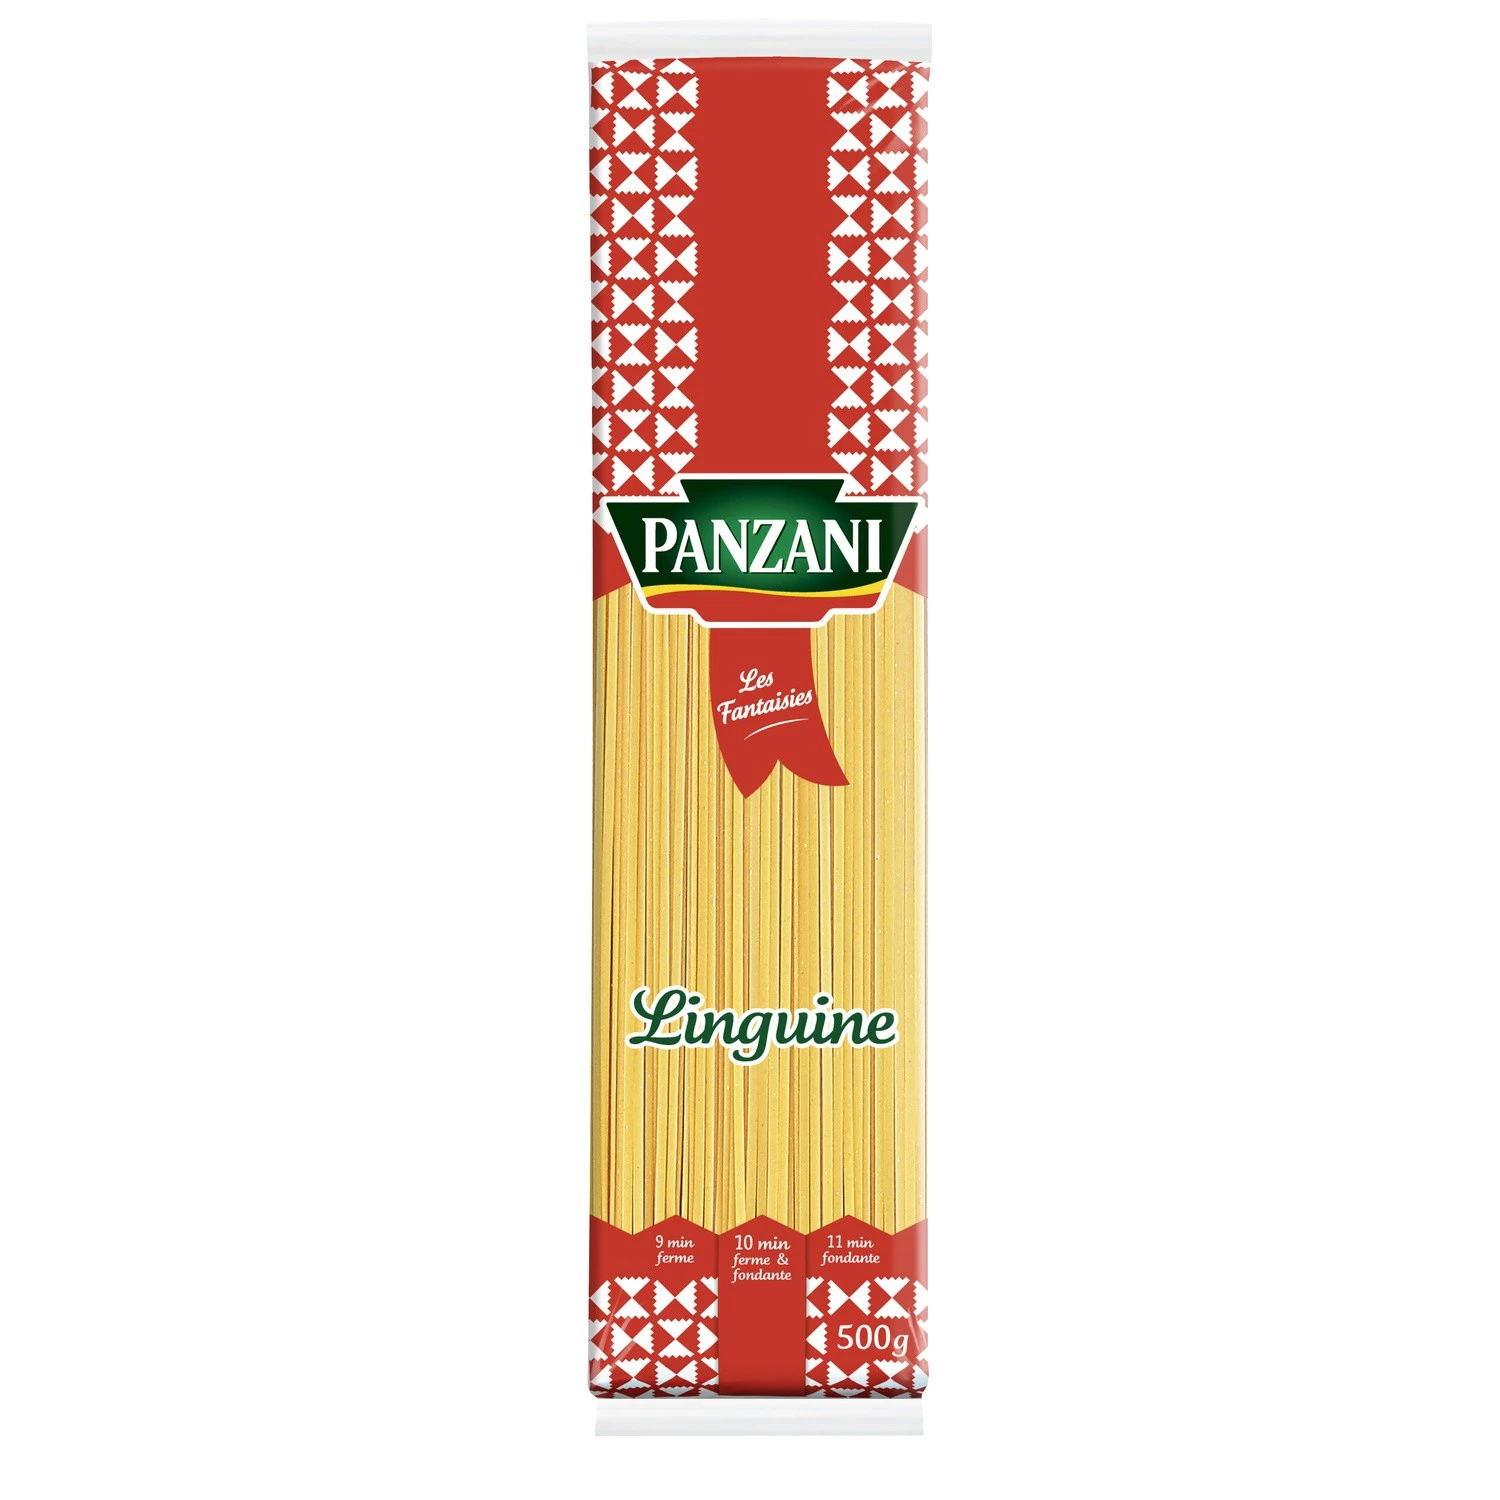 Linguine spaghetti Pasta 500g - بانزاني